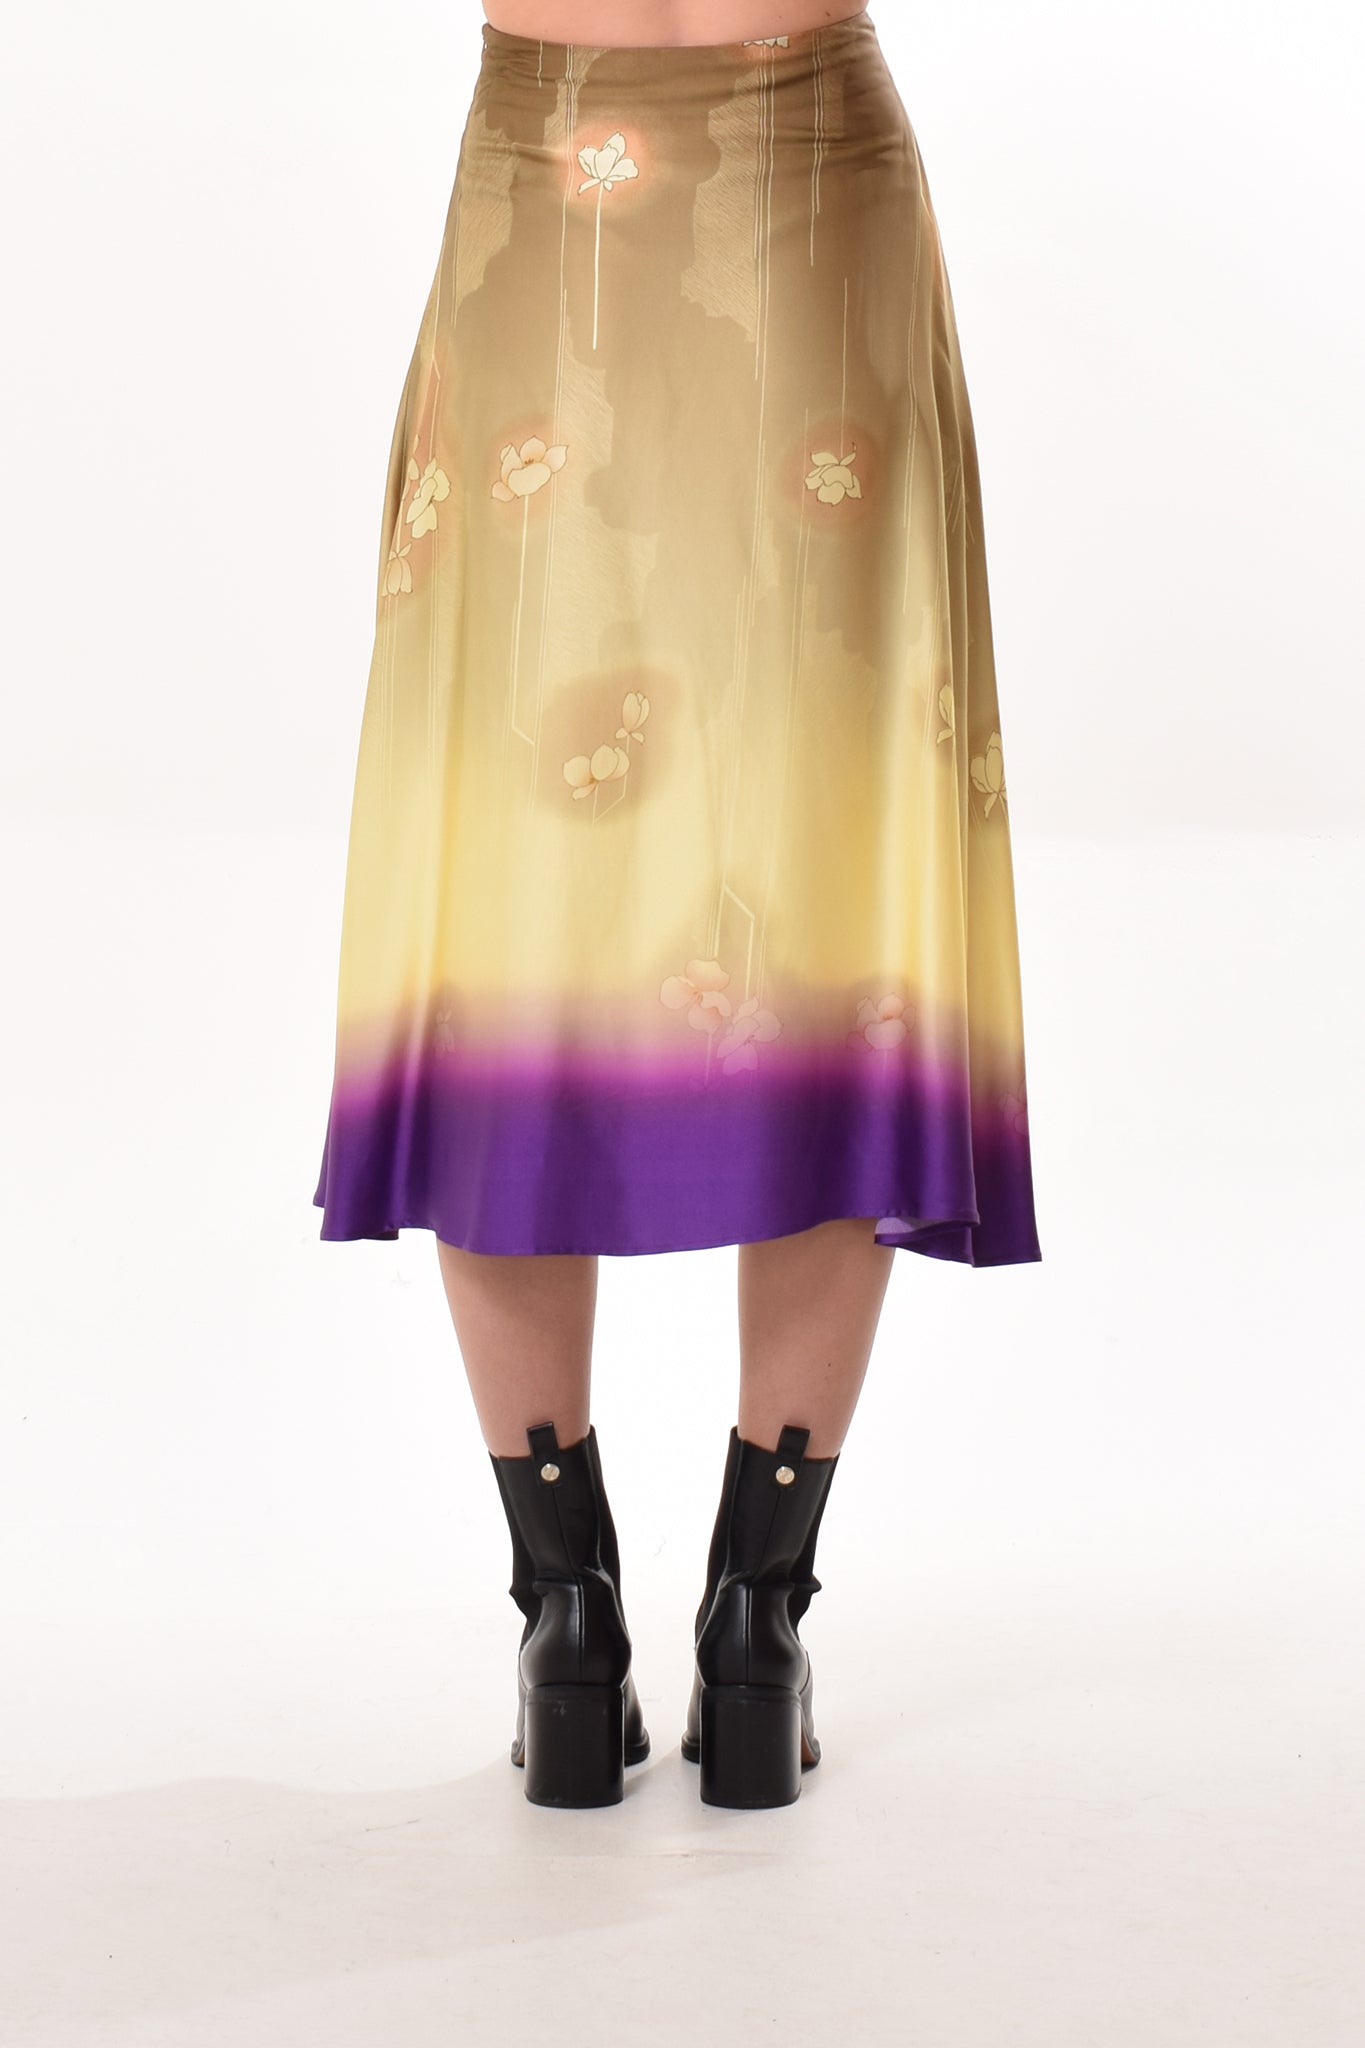 Moss skirt in Purple/Chocolat Kimono